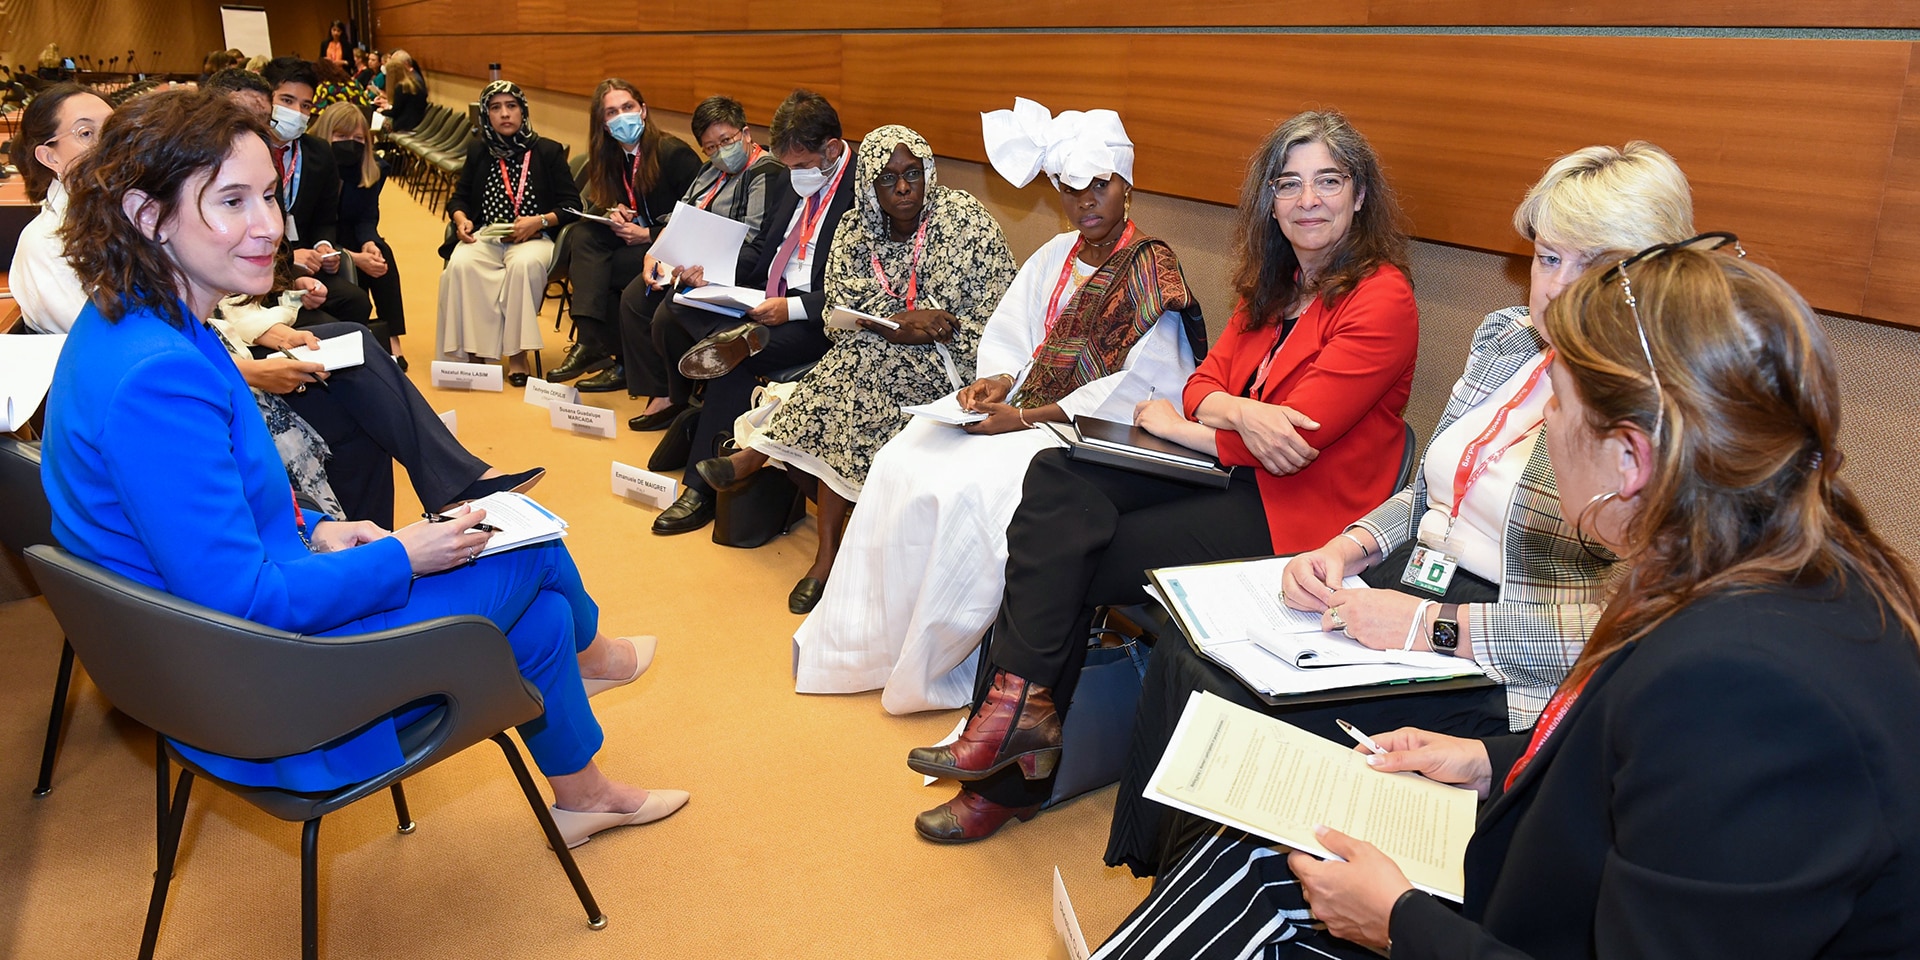 Un gruppo di partecipanti all’evento di Ginevra discutono seduti in cerchio.